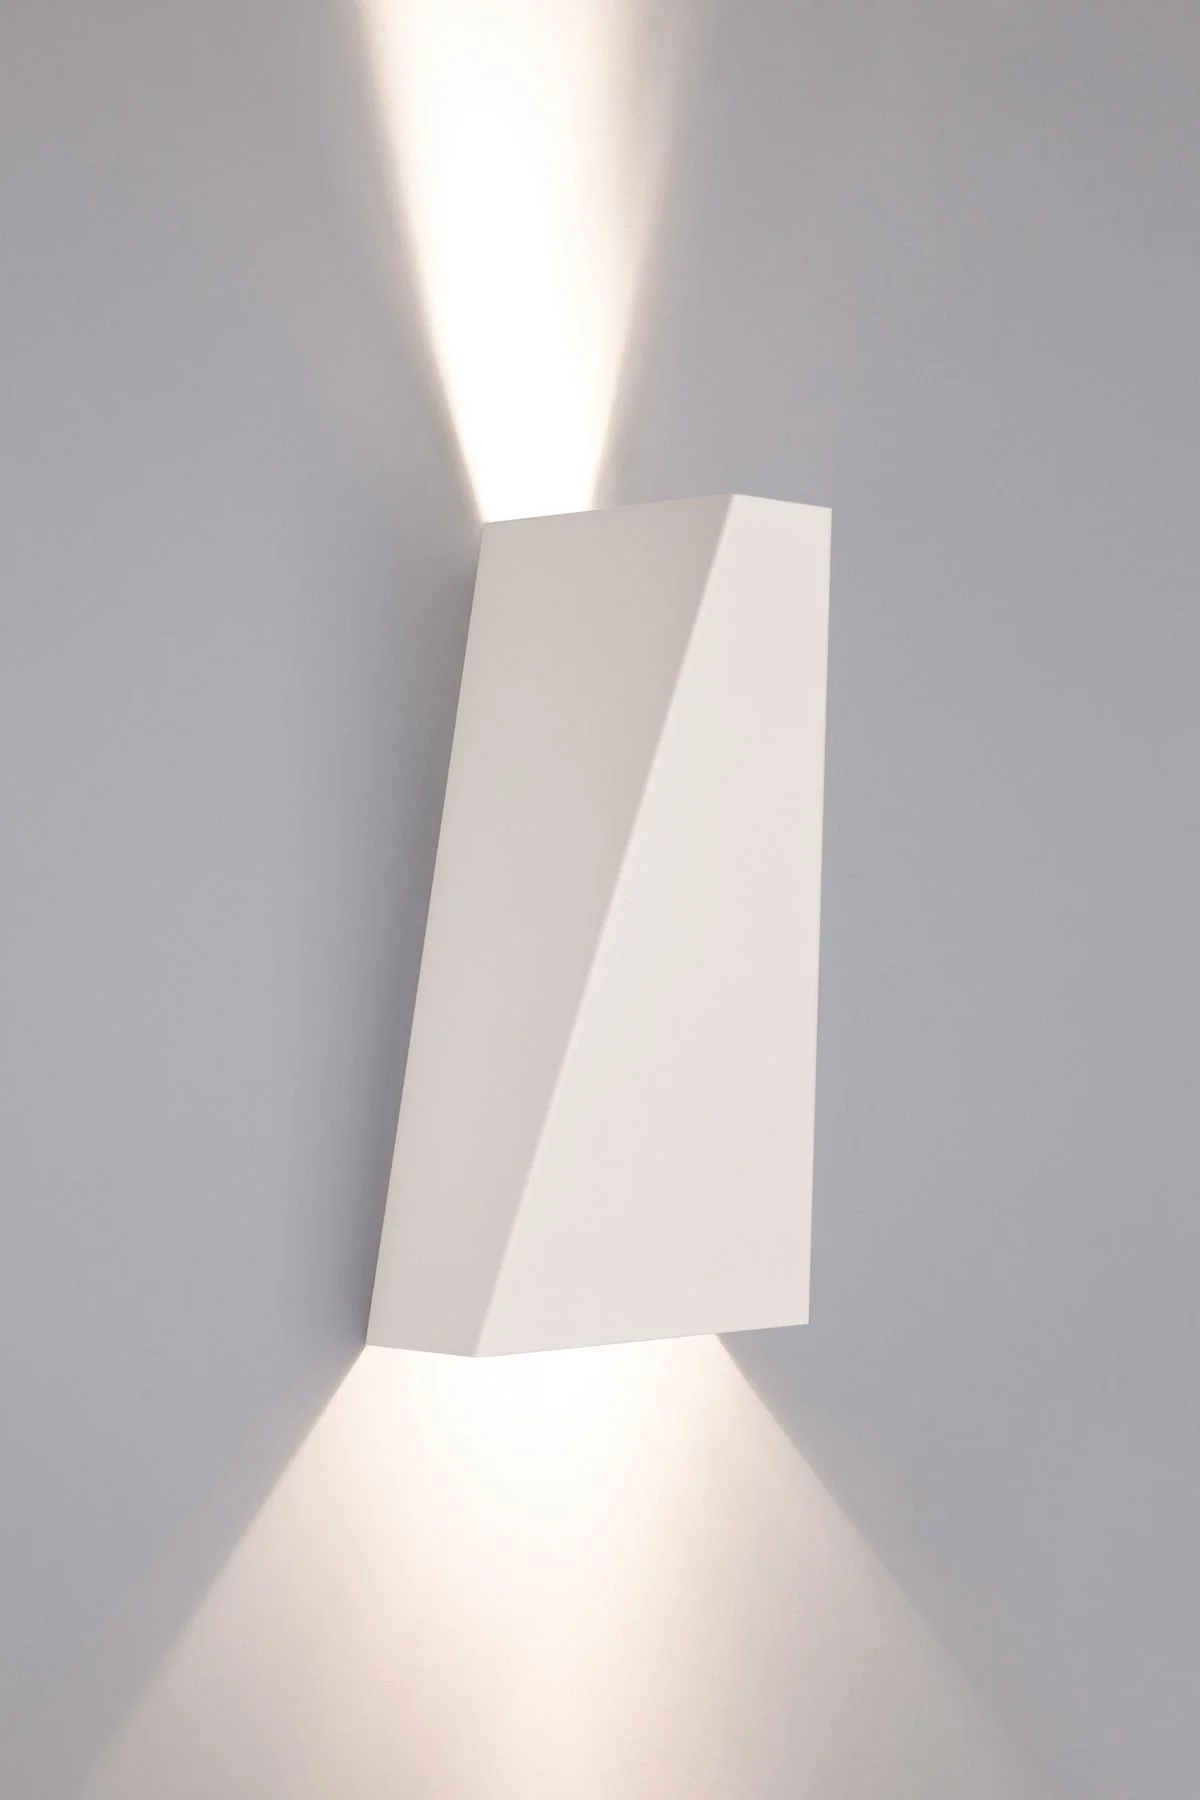   
                        Декоративная подсветка NOWODVORSKI  (Польша) 93106    
                         в стиле хай-тек.  
                        Тип источника света: светодиодные led, галогенные.                                                                                                  фото 1